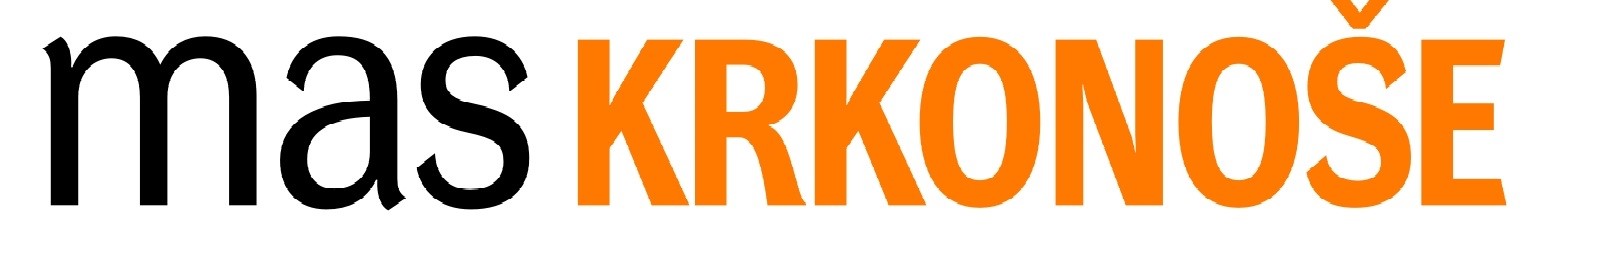 mas_krkonose_logo.jpg (73 KB)